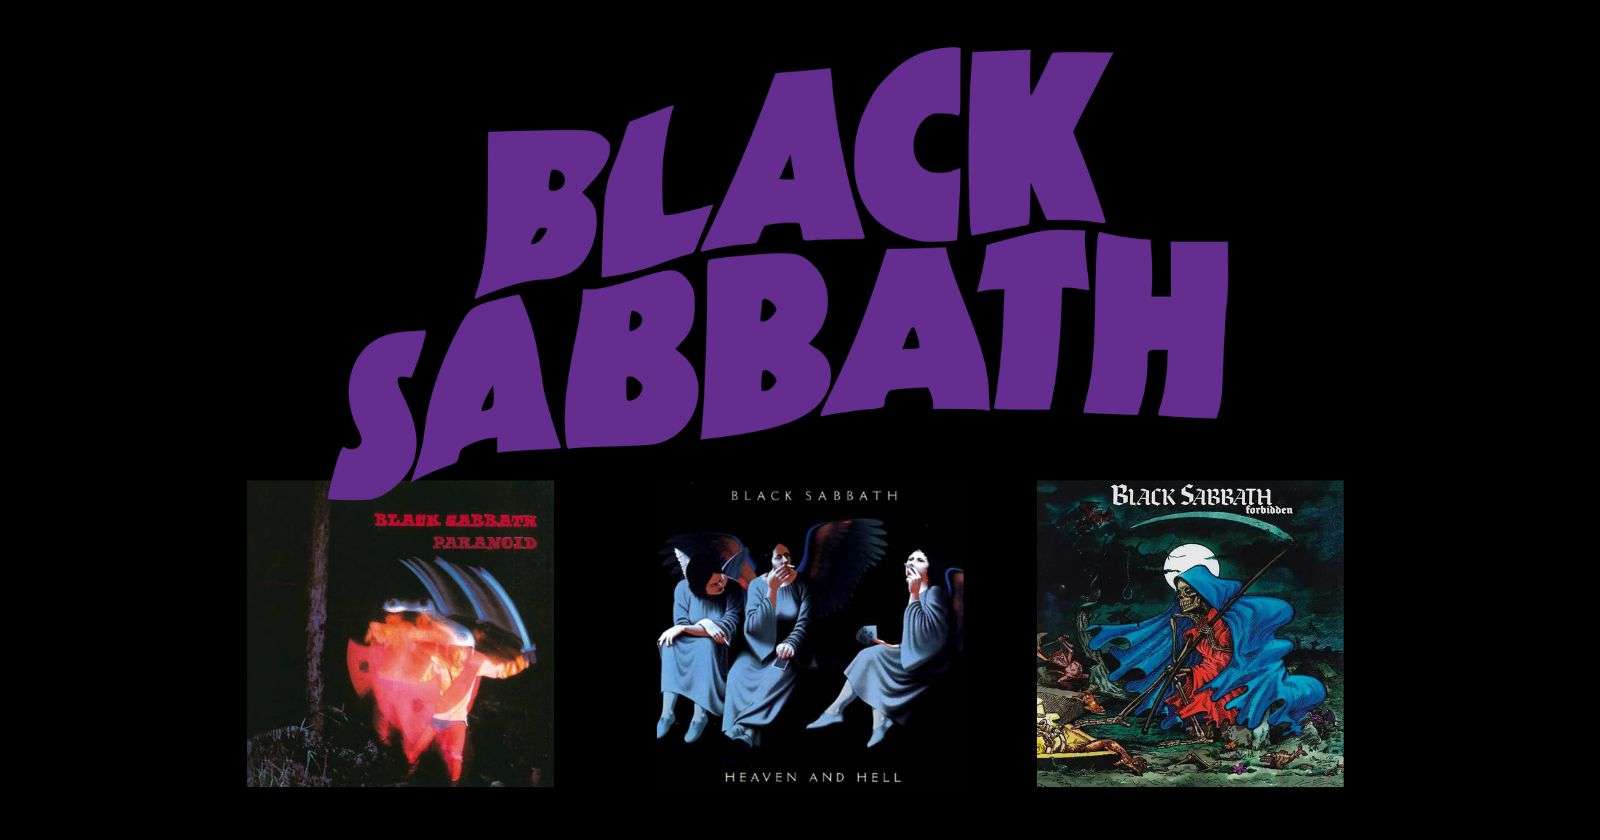 Black Sabbath albums